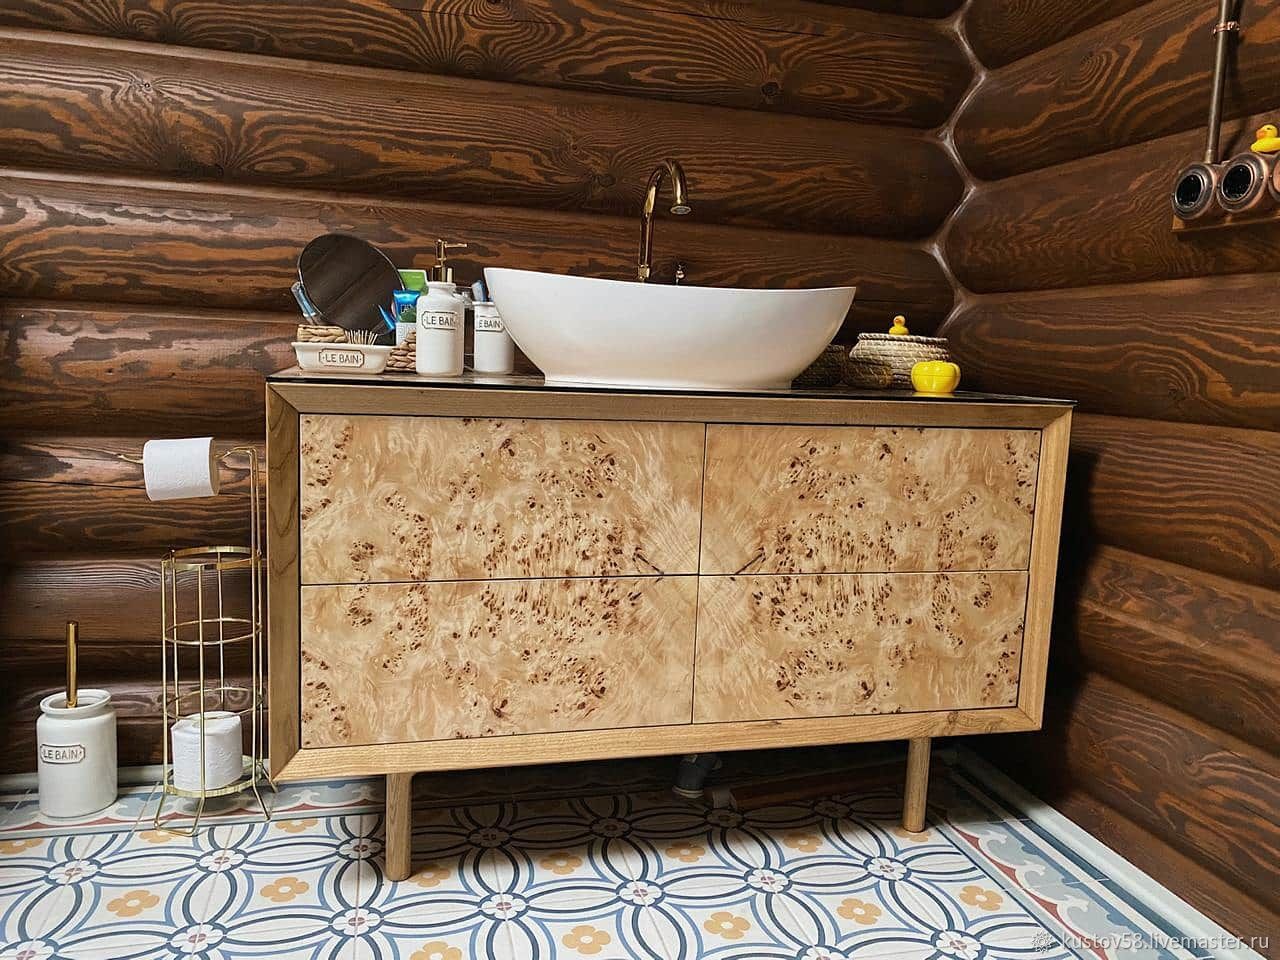 деревянная мебель для ванной комнаты россия